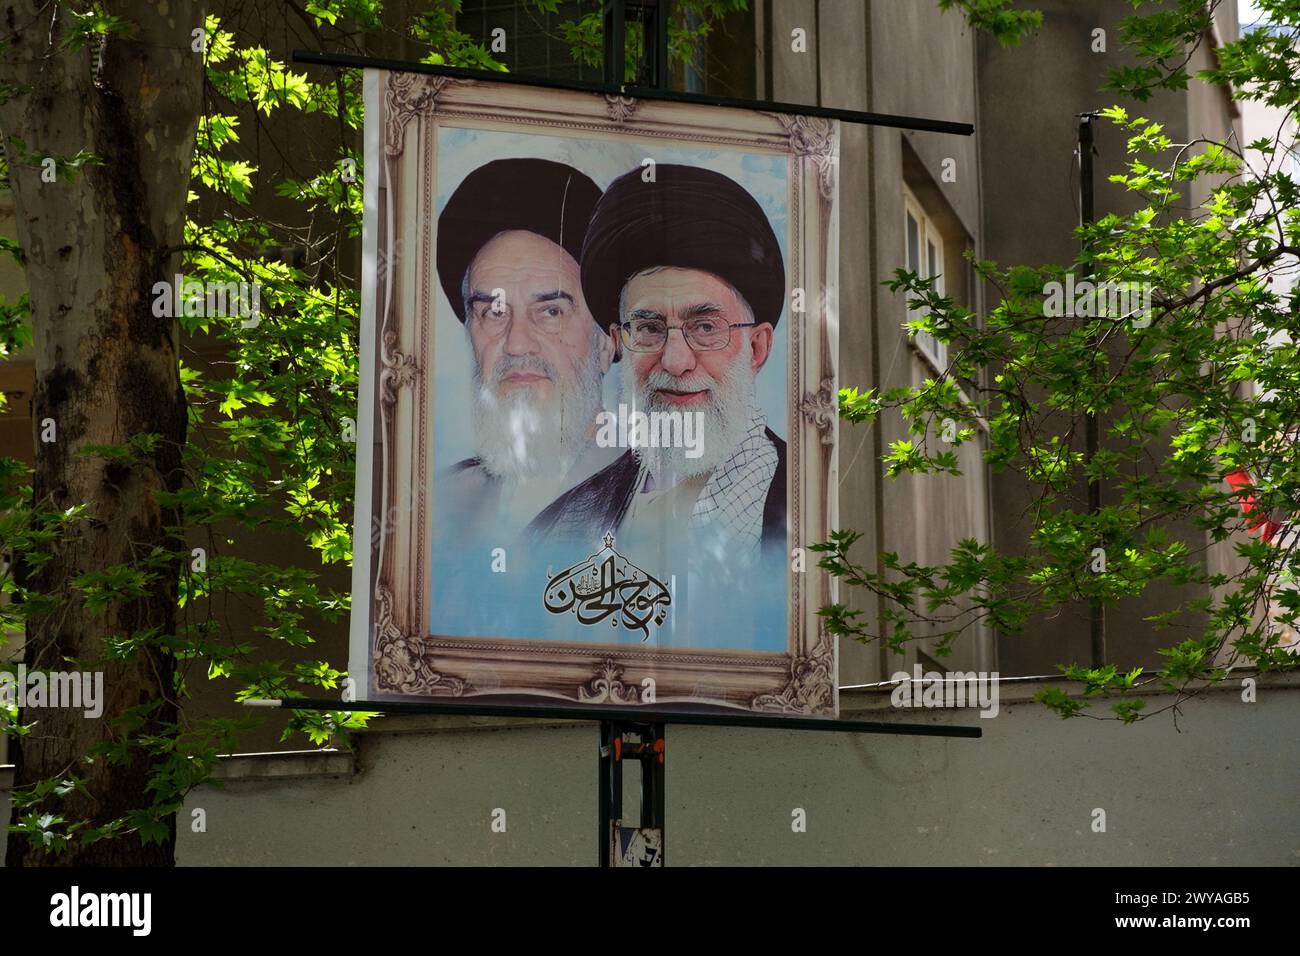 Le foto di Ayatollah sono appese su una cremagliera. Ruhollah Khomeini, fondatore della Repubblica Islamica dell'Iran, a sinistra, e l'attuale leader Ali Khamenei a destra Foto Stock